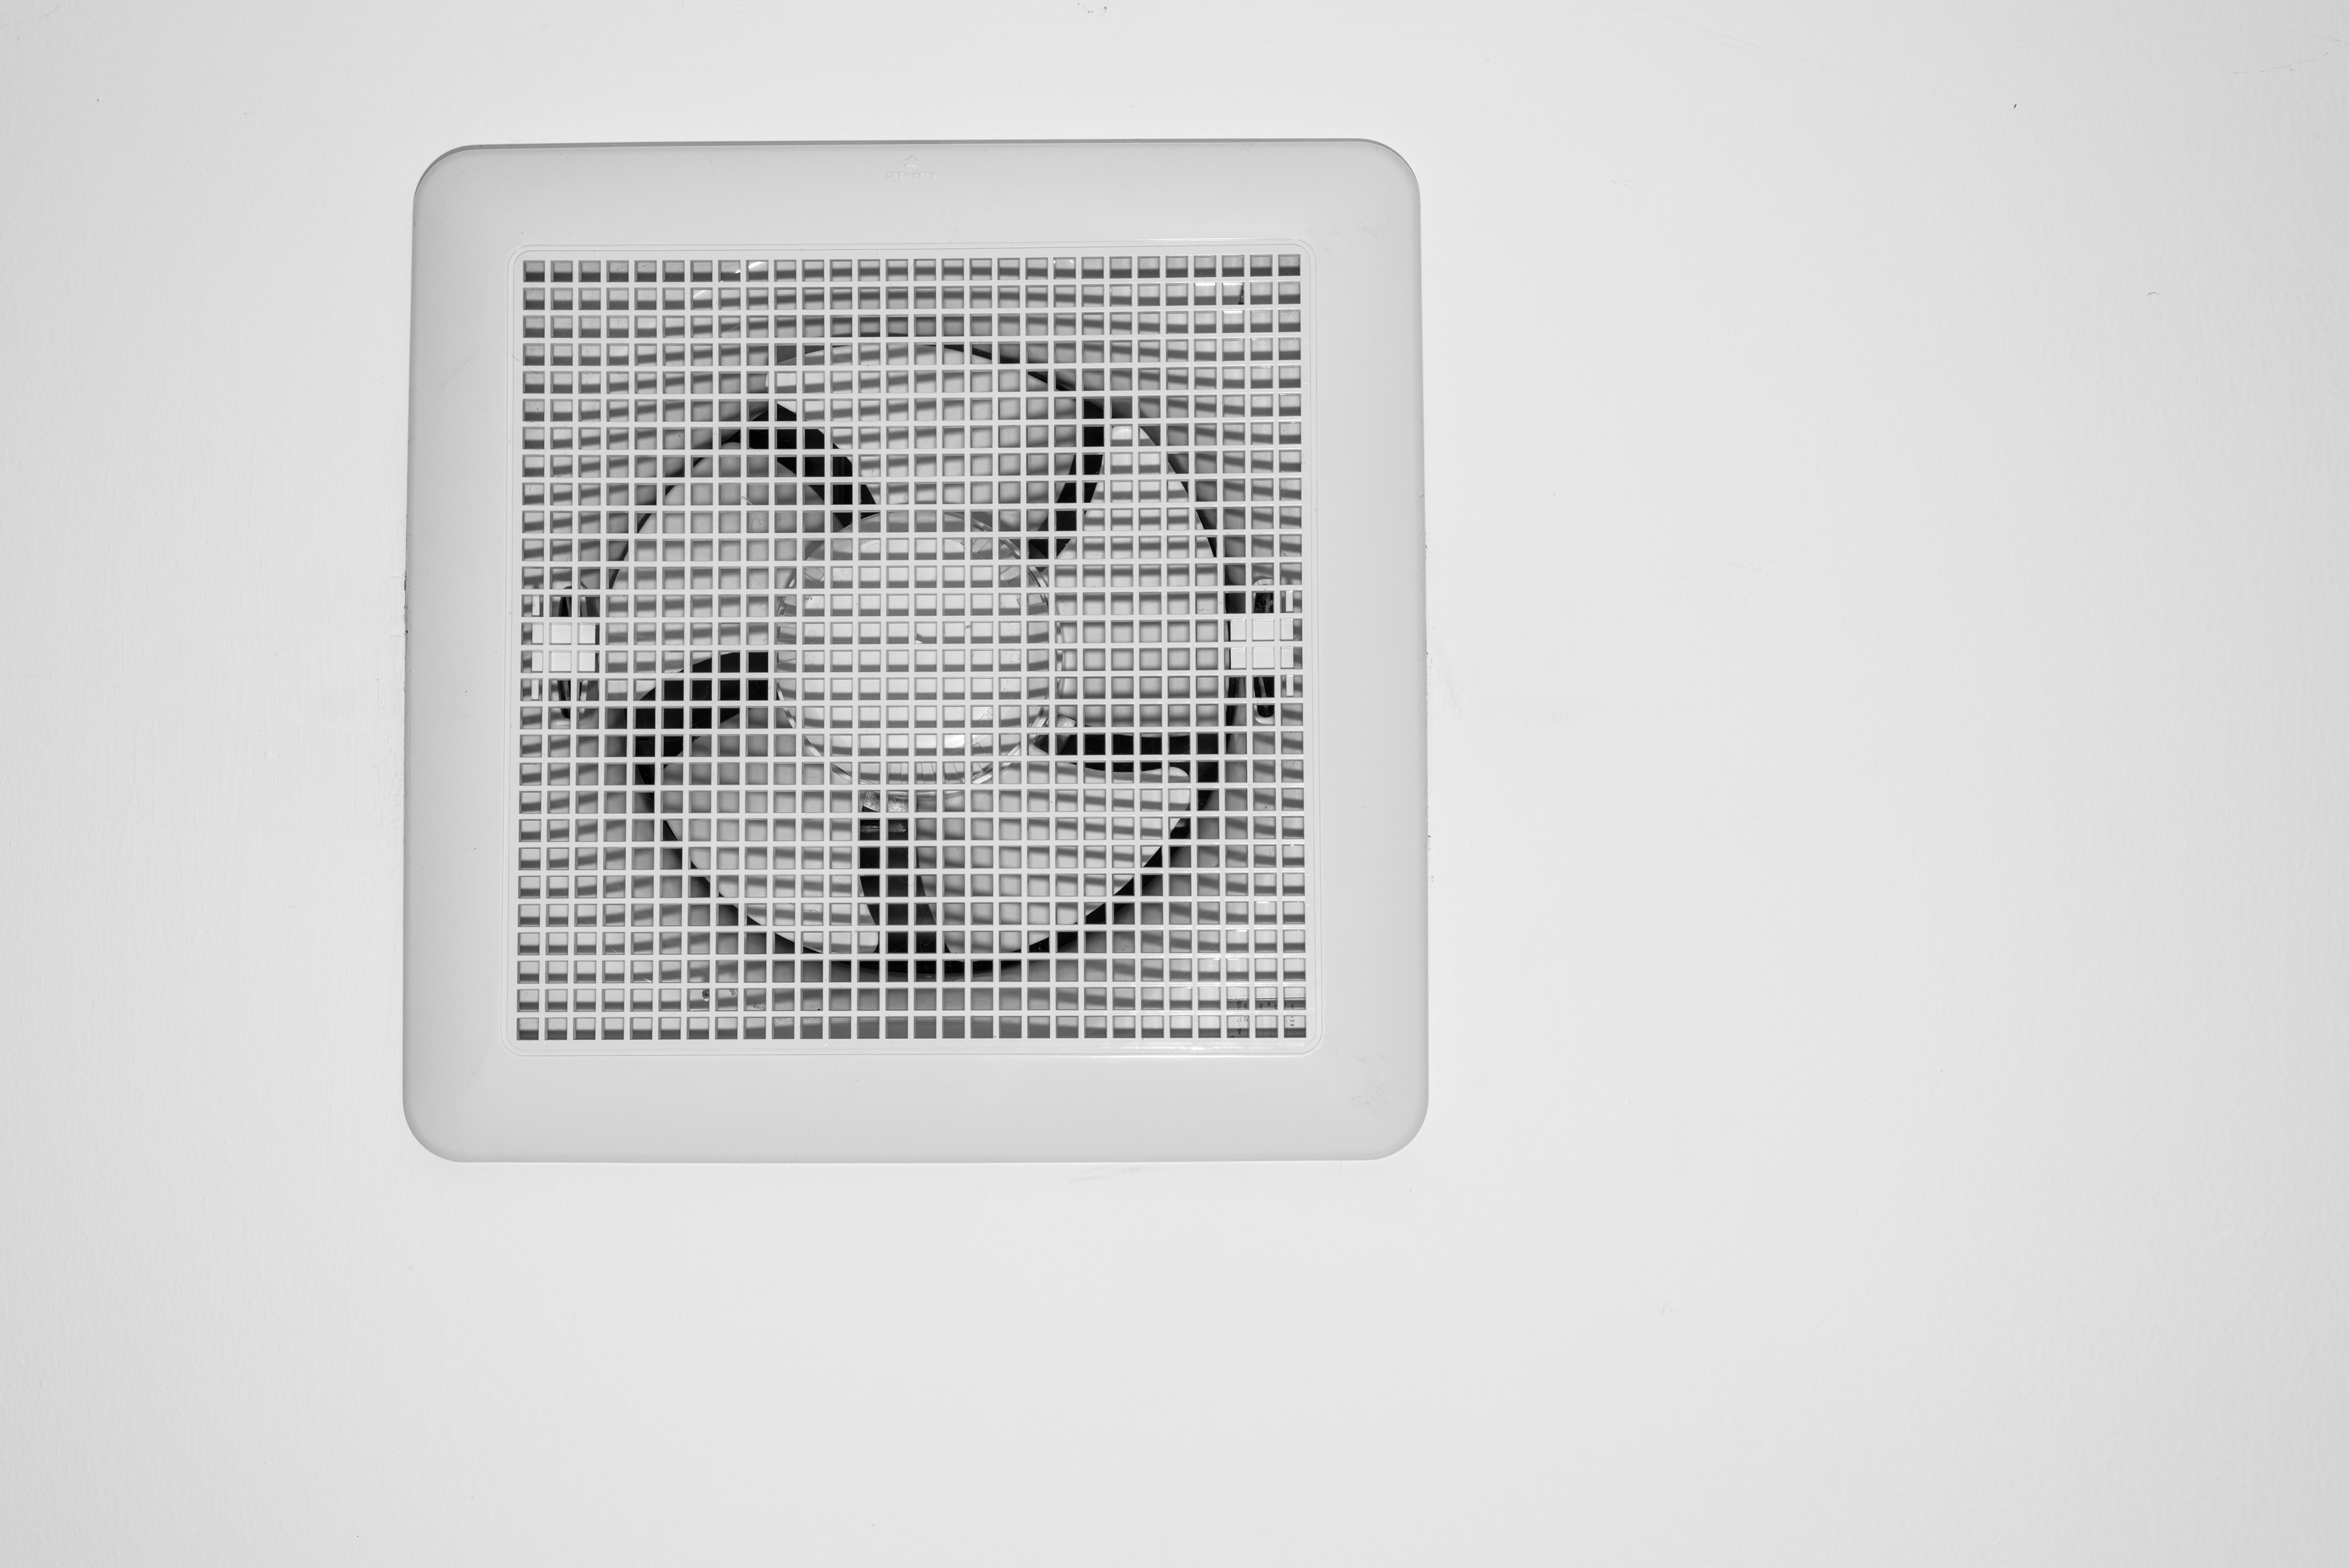 An air exhaust fan | Source: Shutterstock